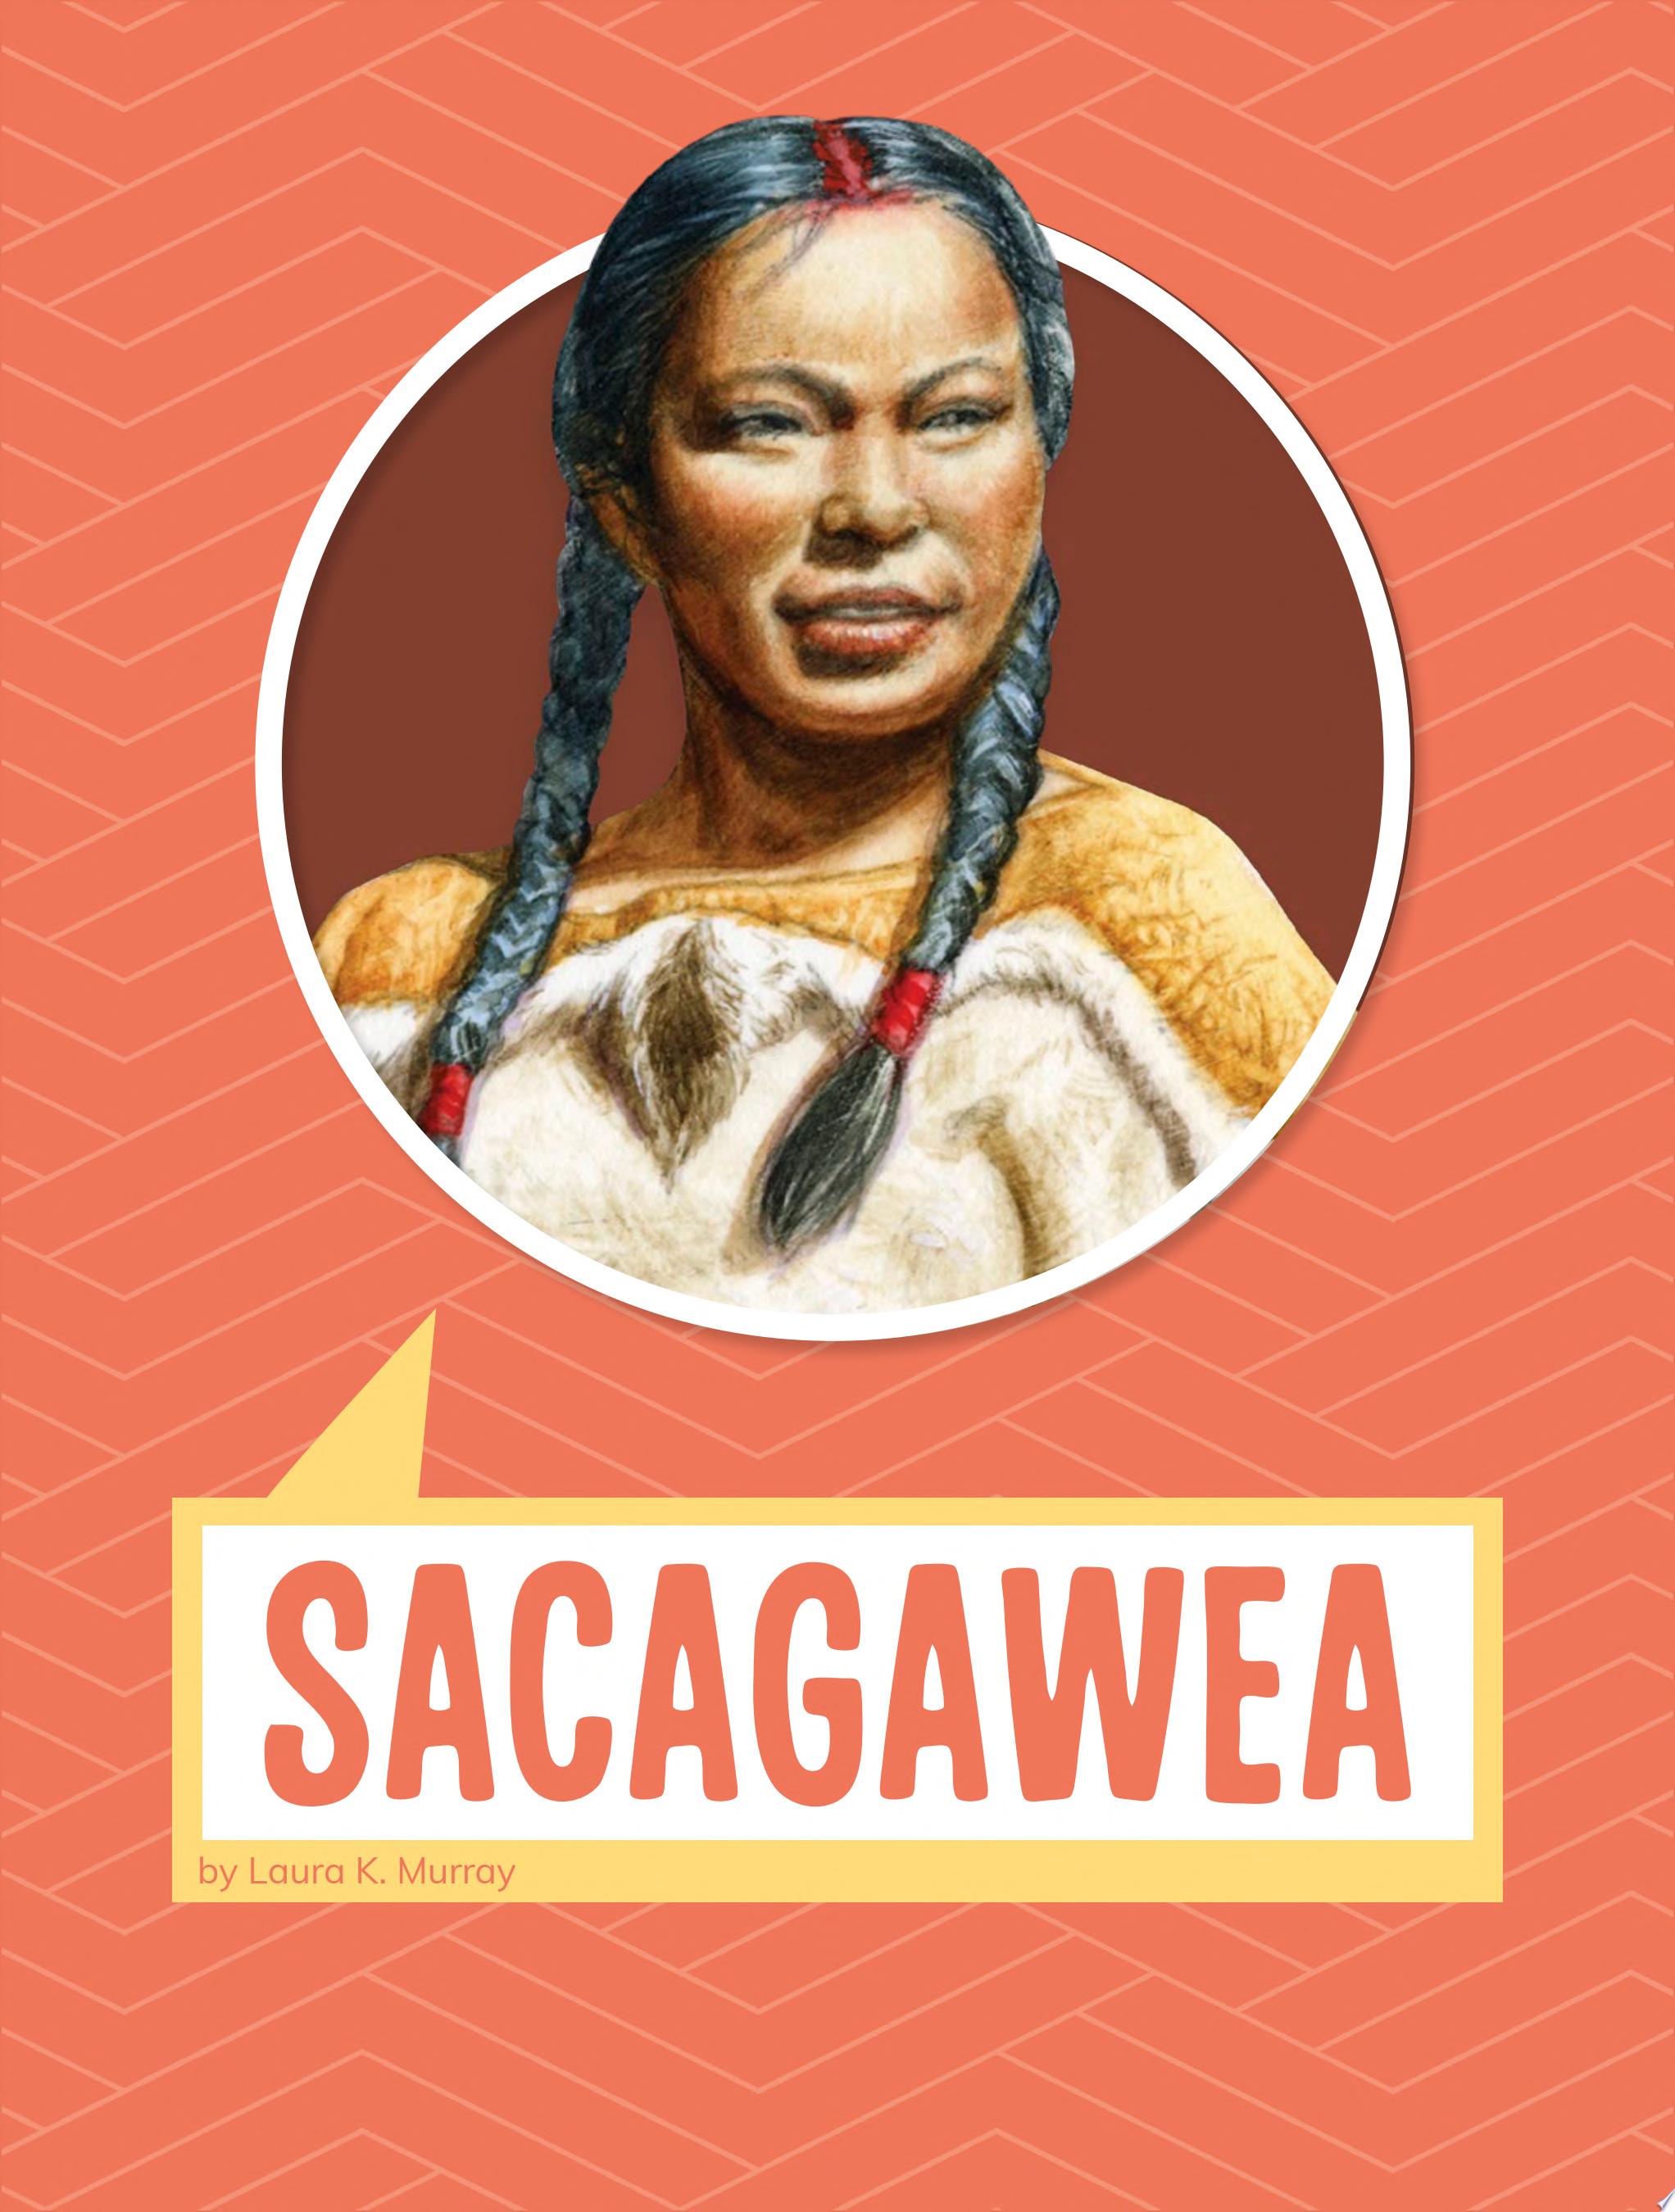 Image for "Sacagawea"